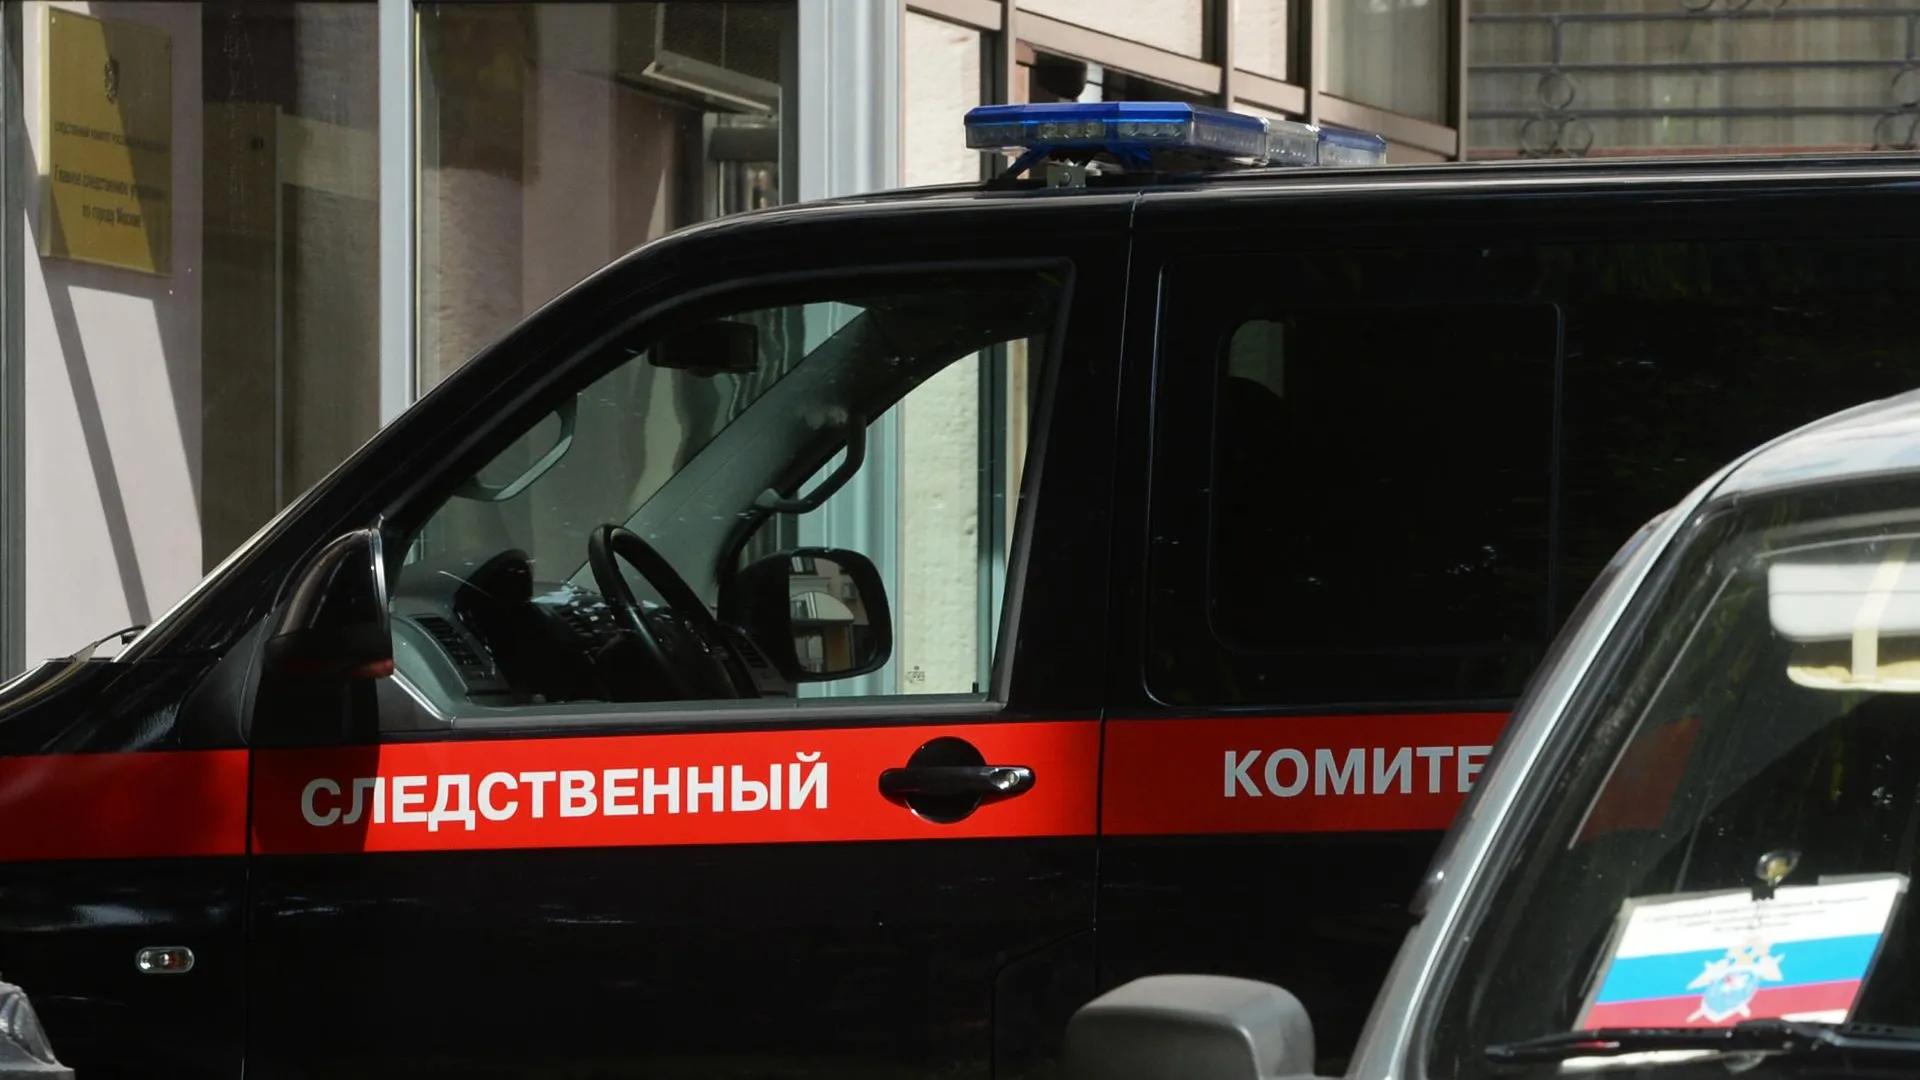 Главе Пушкинского района предъявили обвинение в получении взятки